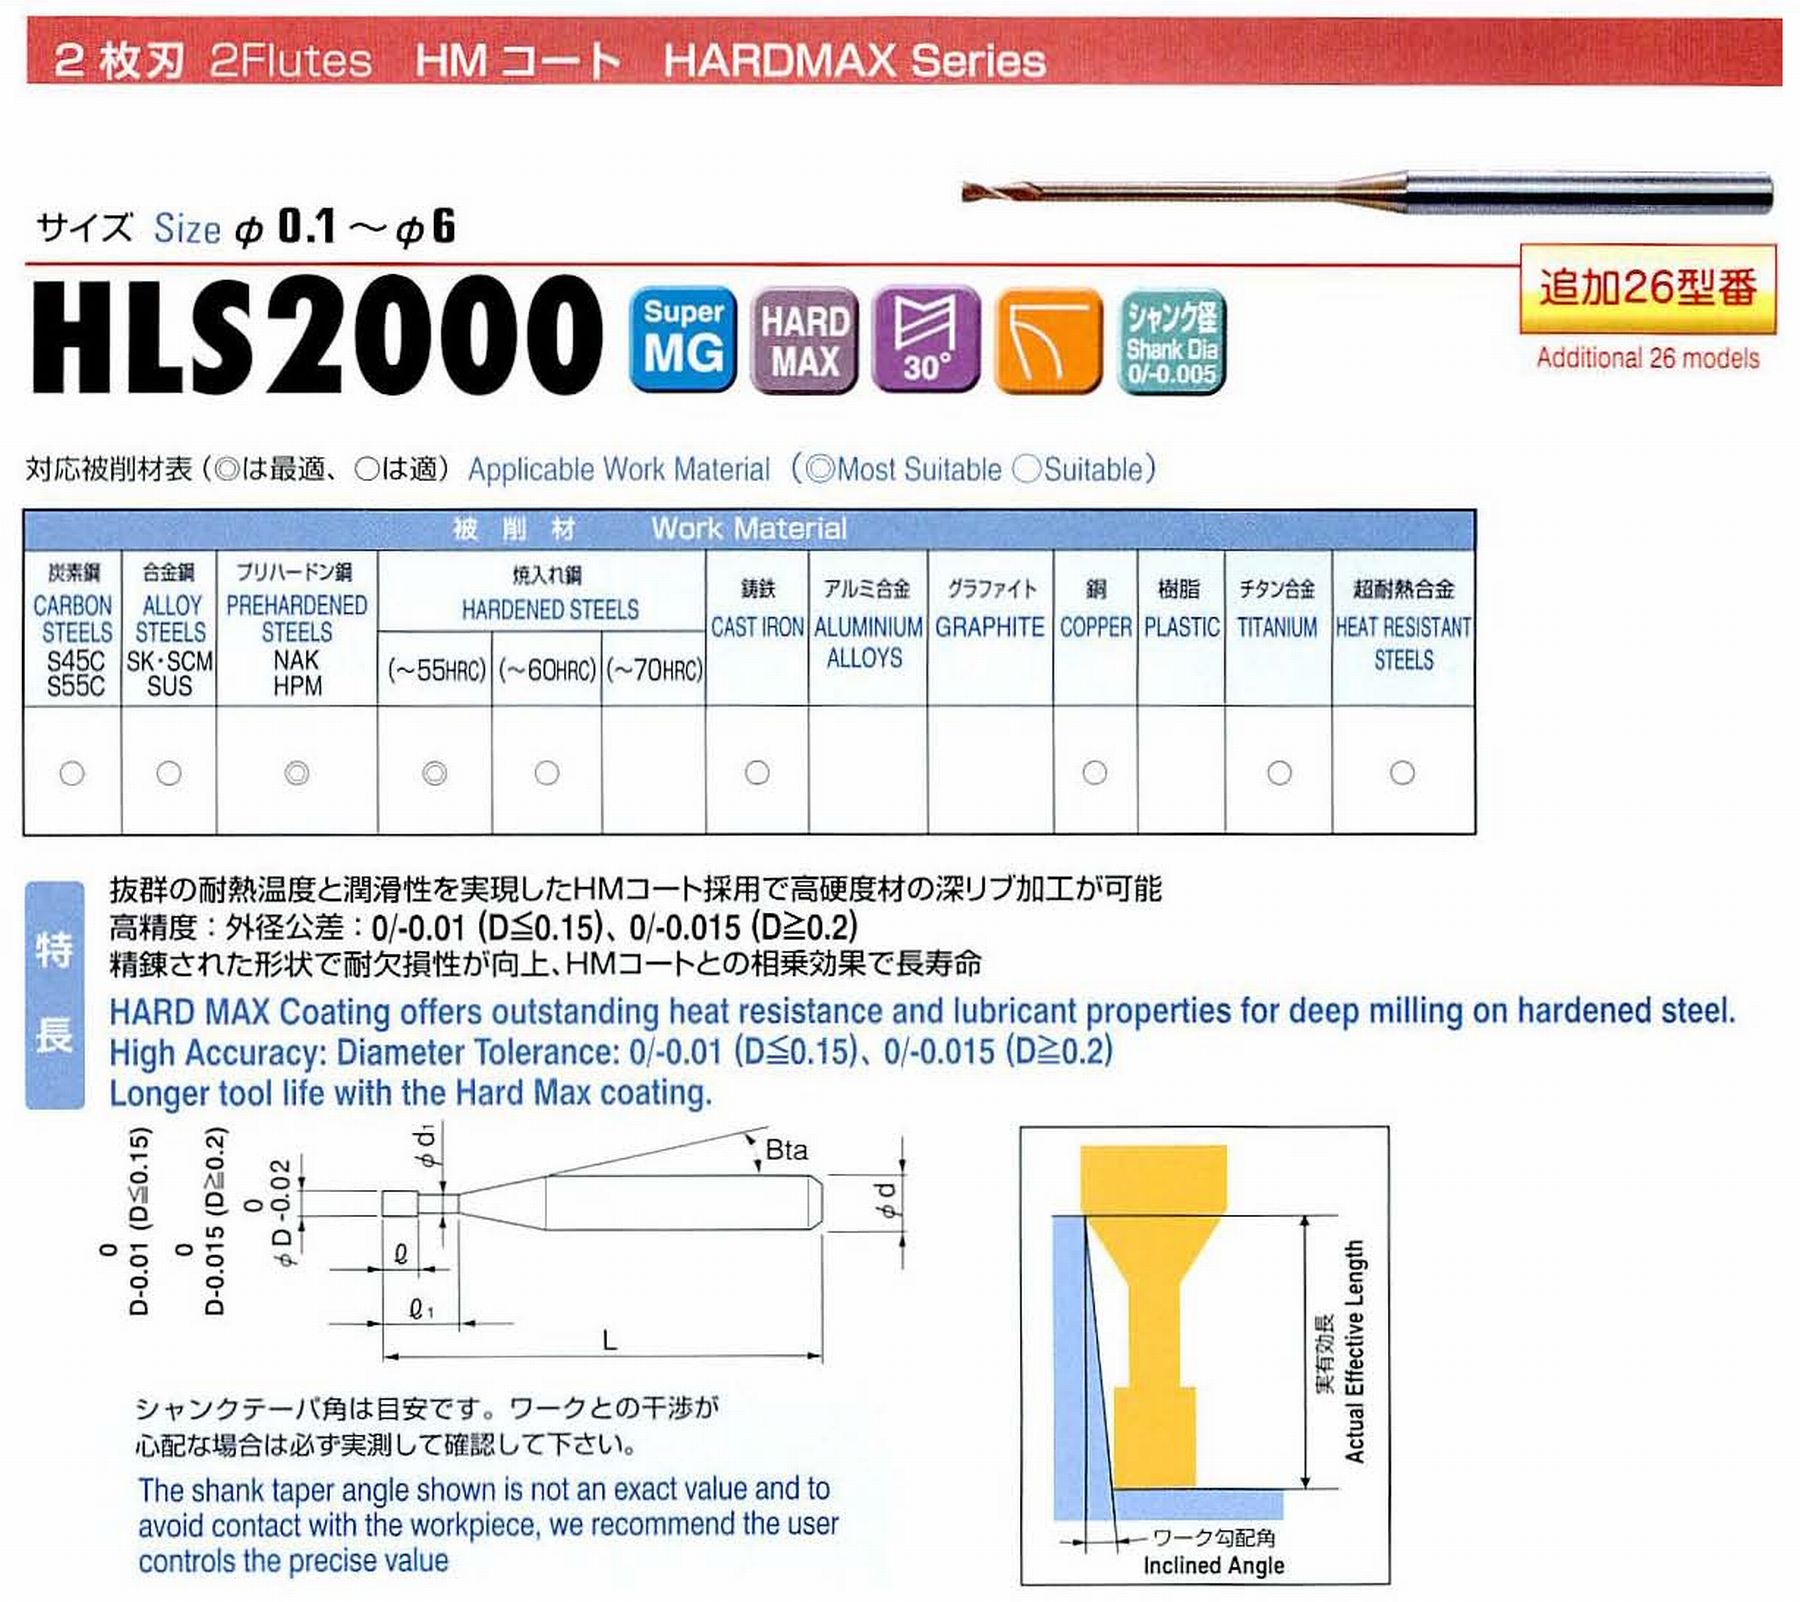 ユニオンツール 2枚刃 HLS2003-020 外径0.3 有効長2 刃長0.4 首径0.28 シャンクテーパ角16° 全長45 シャンク径4